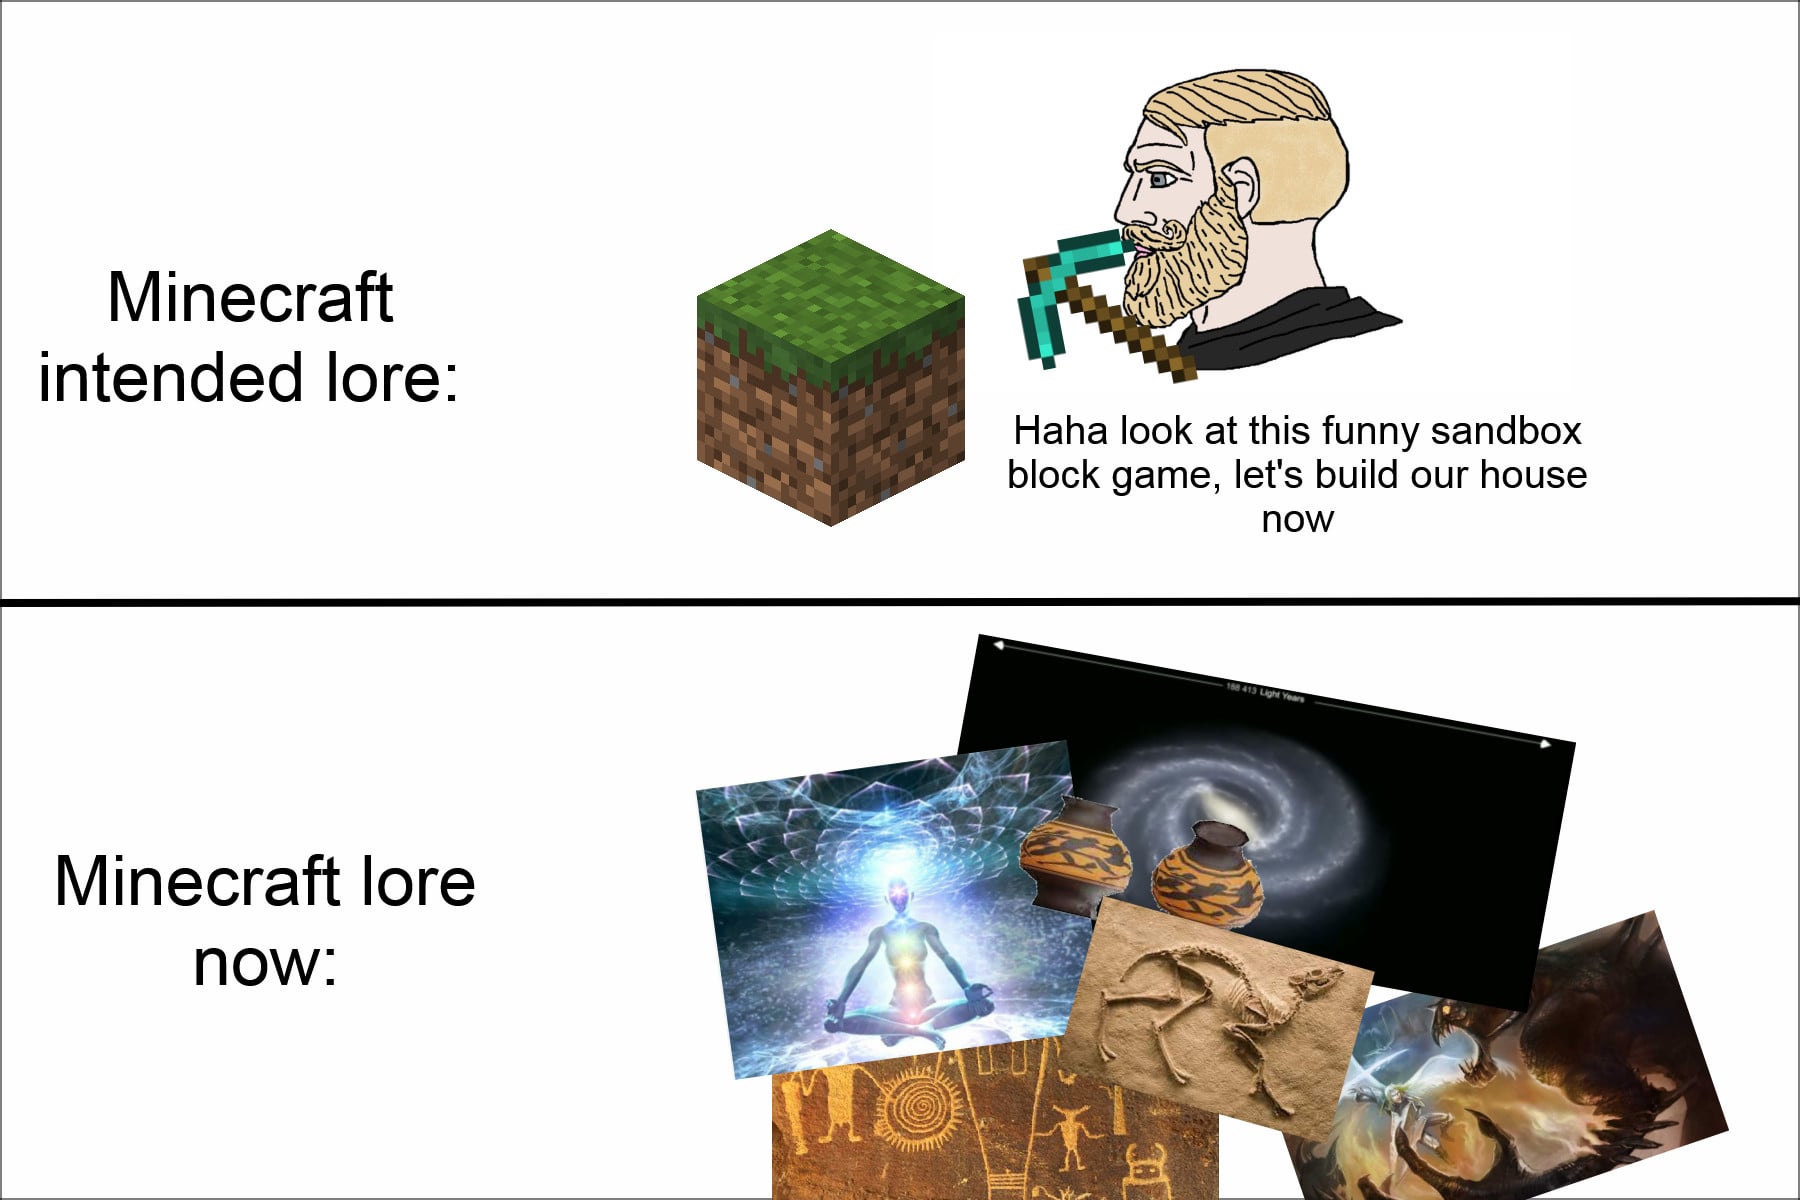 Minecraft Memes - "Mind-blowing Minecraft lore theories"